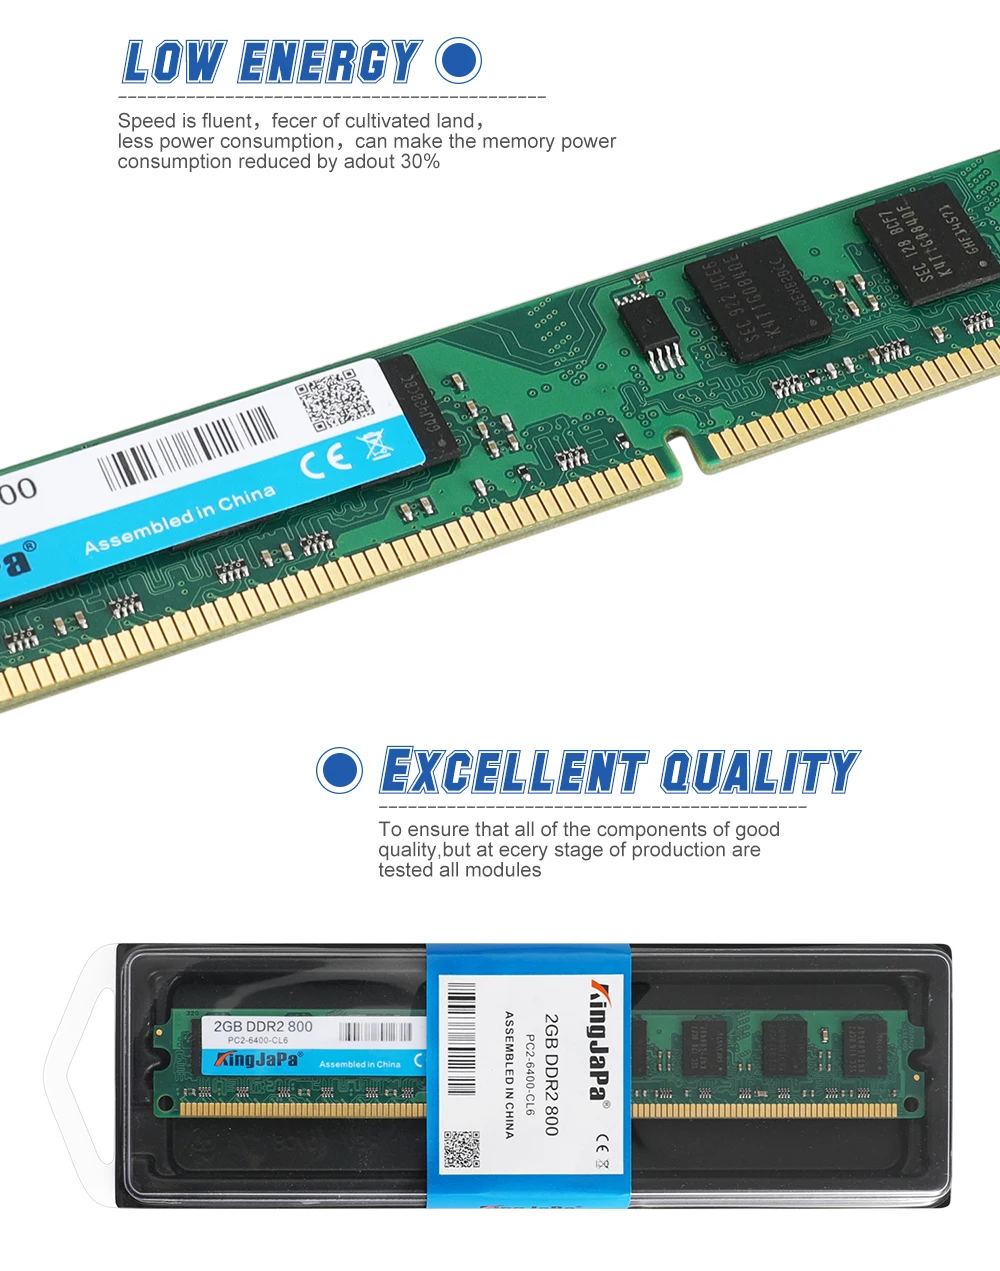 KingJaPa DDR на возраст 1, 2, 3, DDR1 DDR2 DDR3/PC1 PC2 PC3 512 МБ 1 Гб 2 Гб 4 ГБ 8 ГБ оперативной памяти, 16 Гб встроенной памяти, портативный компьютер настольных ПК свет и освещение/Светодиодные лампы/Светодиодные ночные огни Оперативная Память память 1600 МГц 1333 800 400